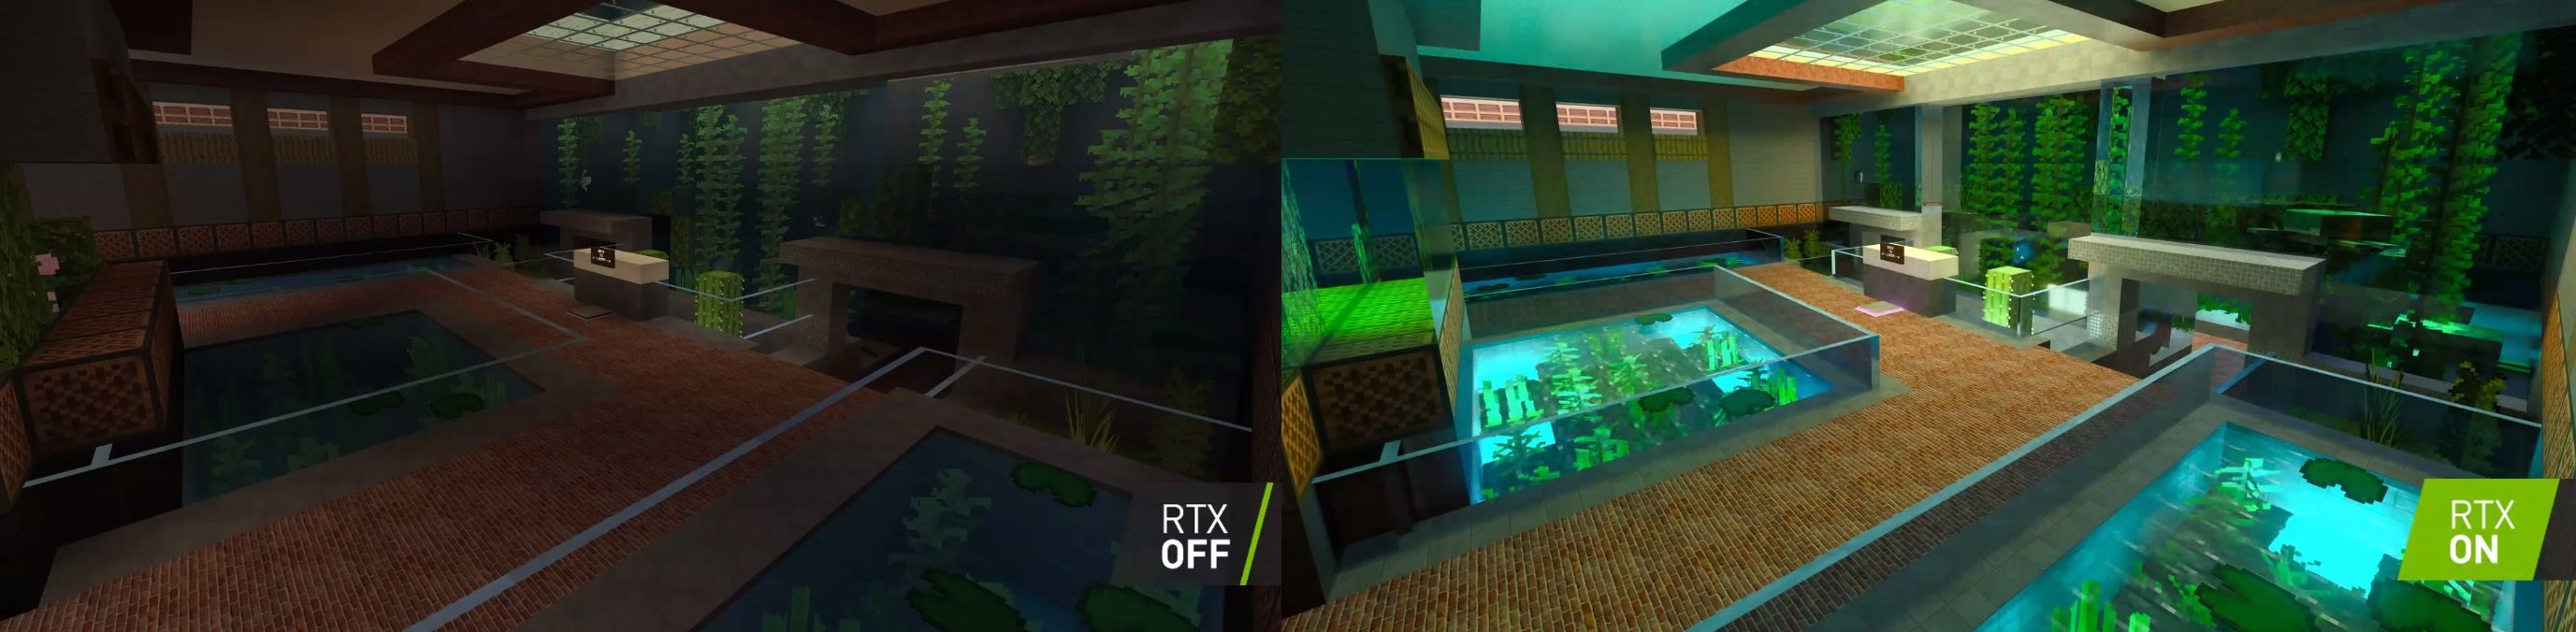 Com o RTX, Minecraft ganha efeitos de iluminação incríveis